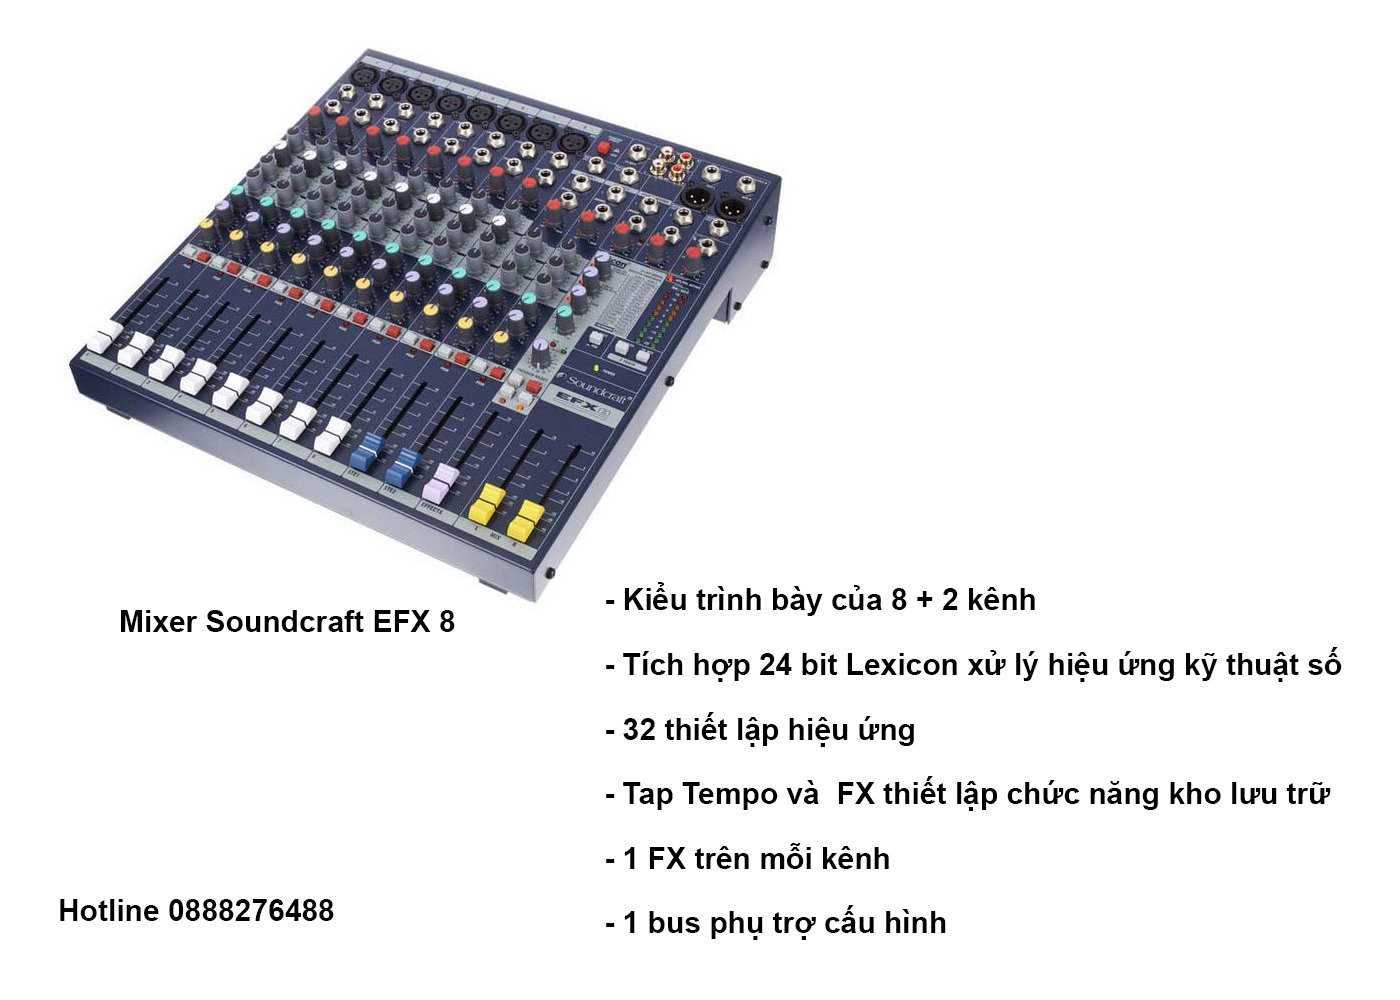 Mixer Soundcraft EFX 8 cho dàn âm thanh hội trường 150m2